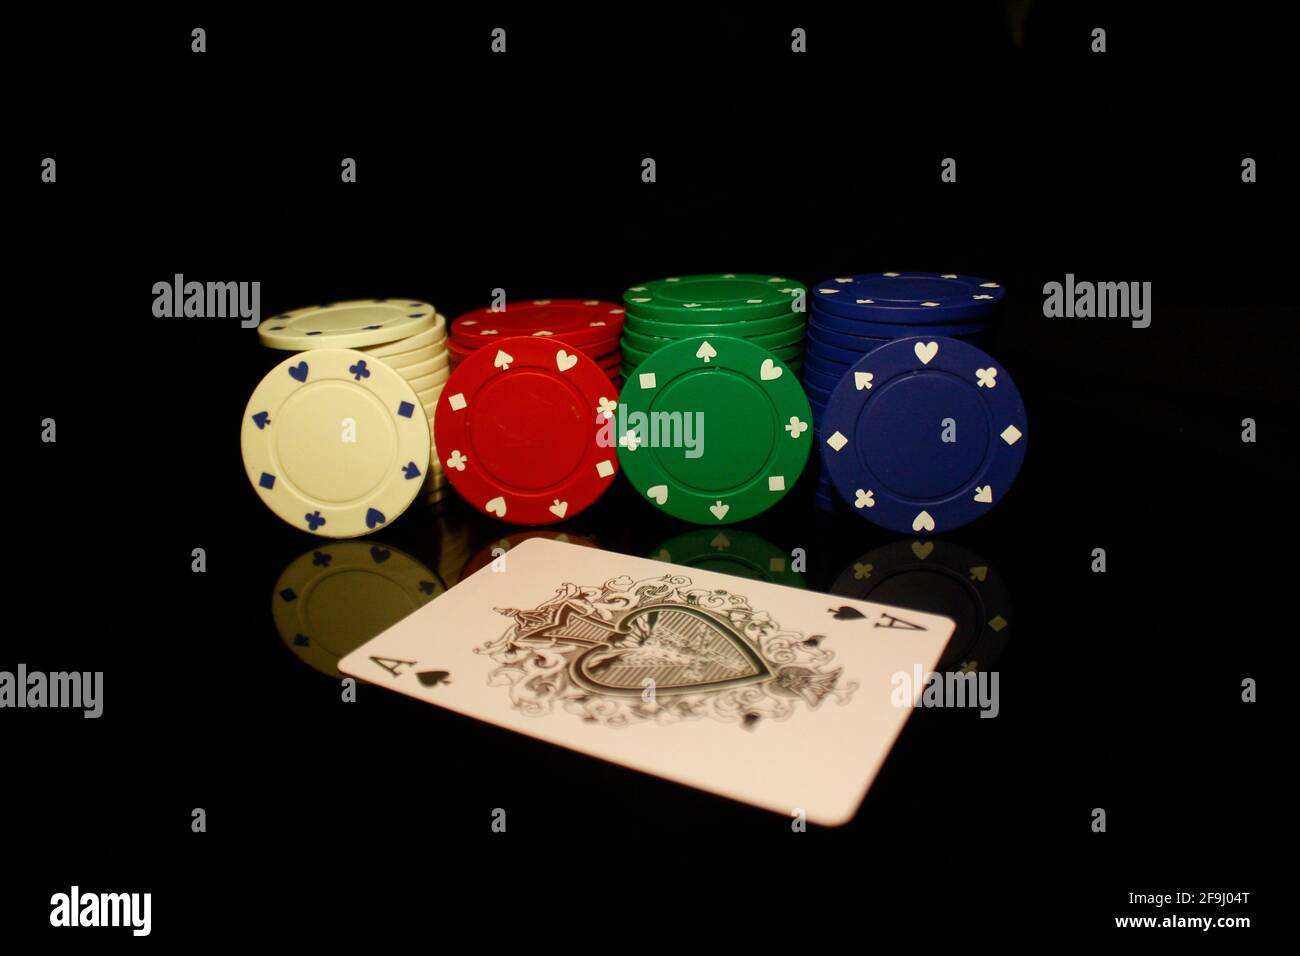 Weiße, rote, grüne, blaue Pocker-Chips stapeln sich mit vier Chips und einer Ass-Karte vorne isoliert auf schwarz mit Reflektion Stockfoto